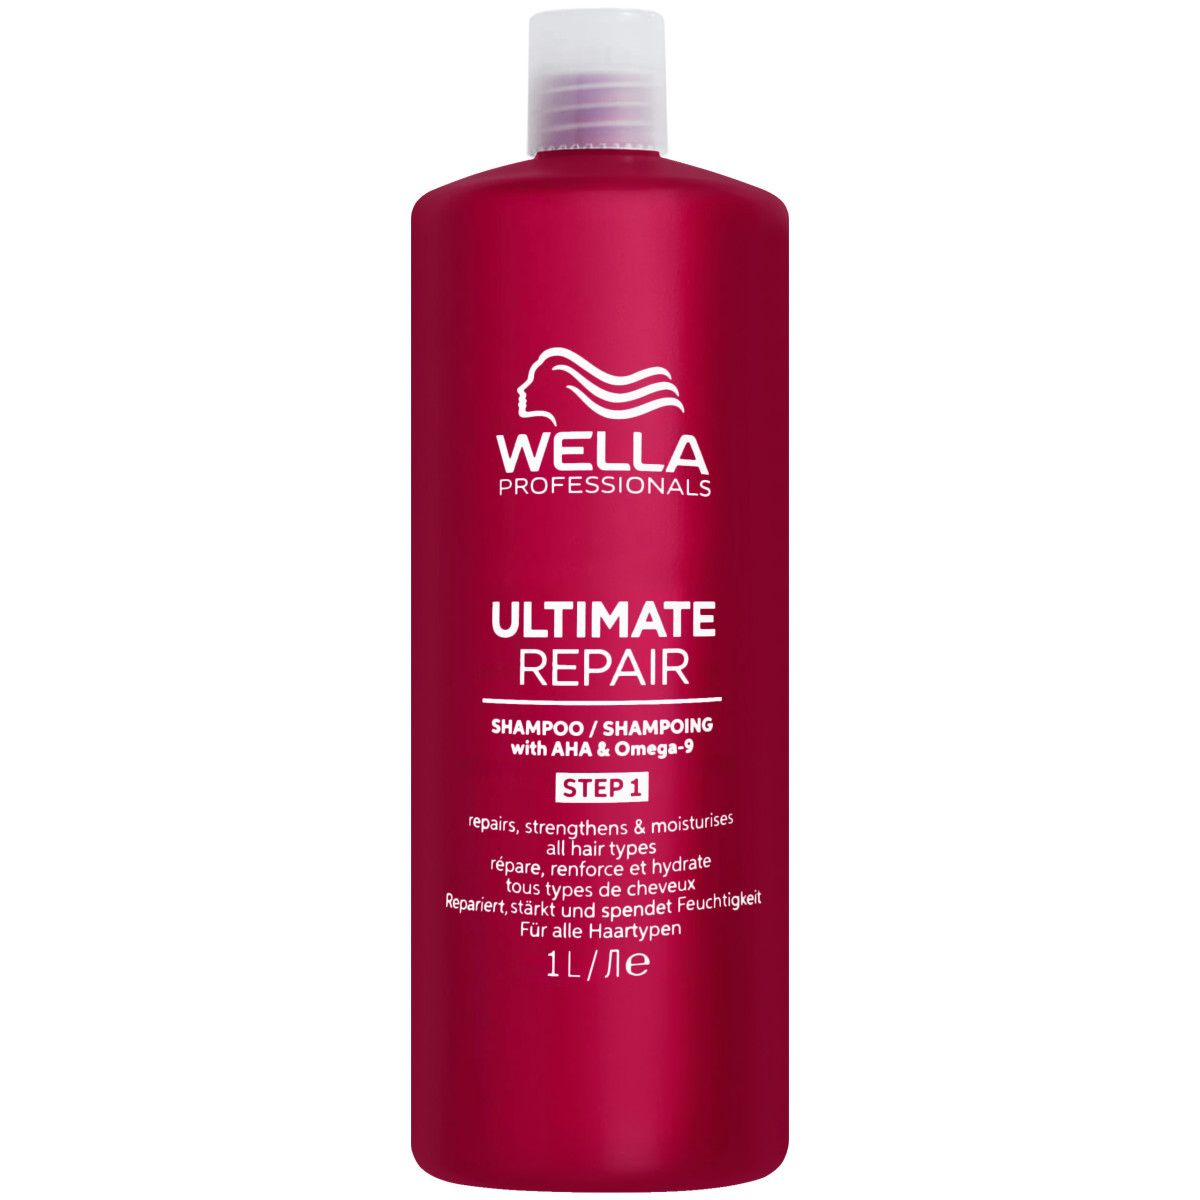 Wella Ultimate Repair Shampoo - regenerujący szampon do włosów, 1000ml